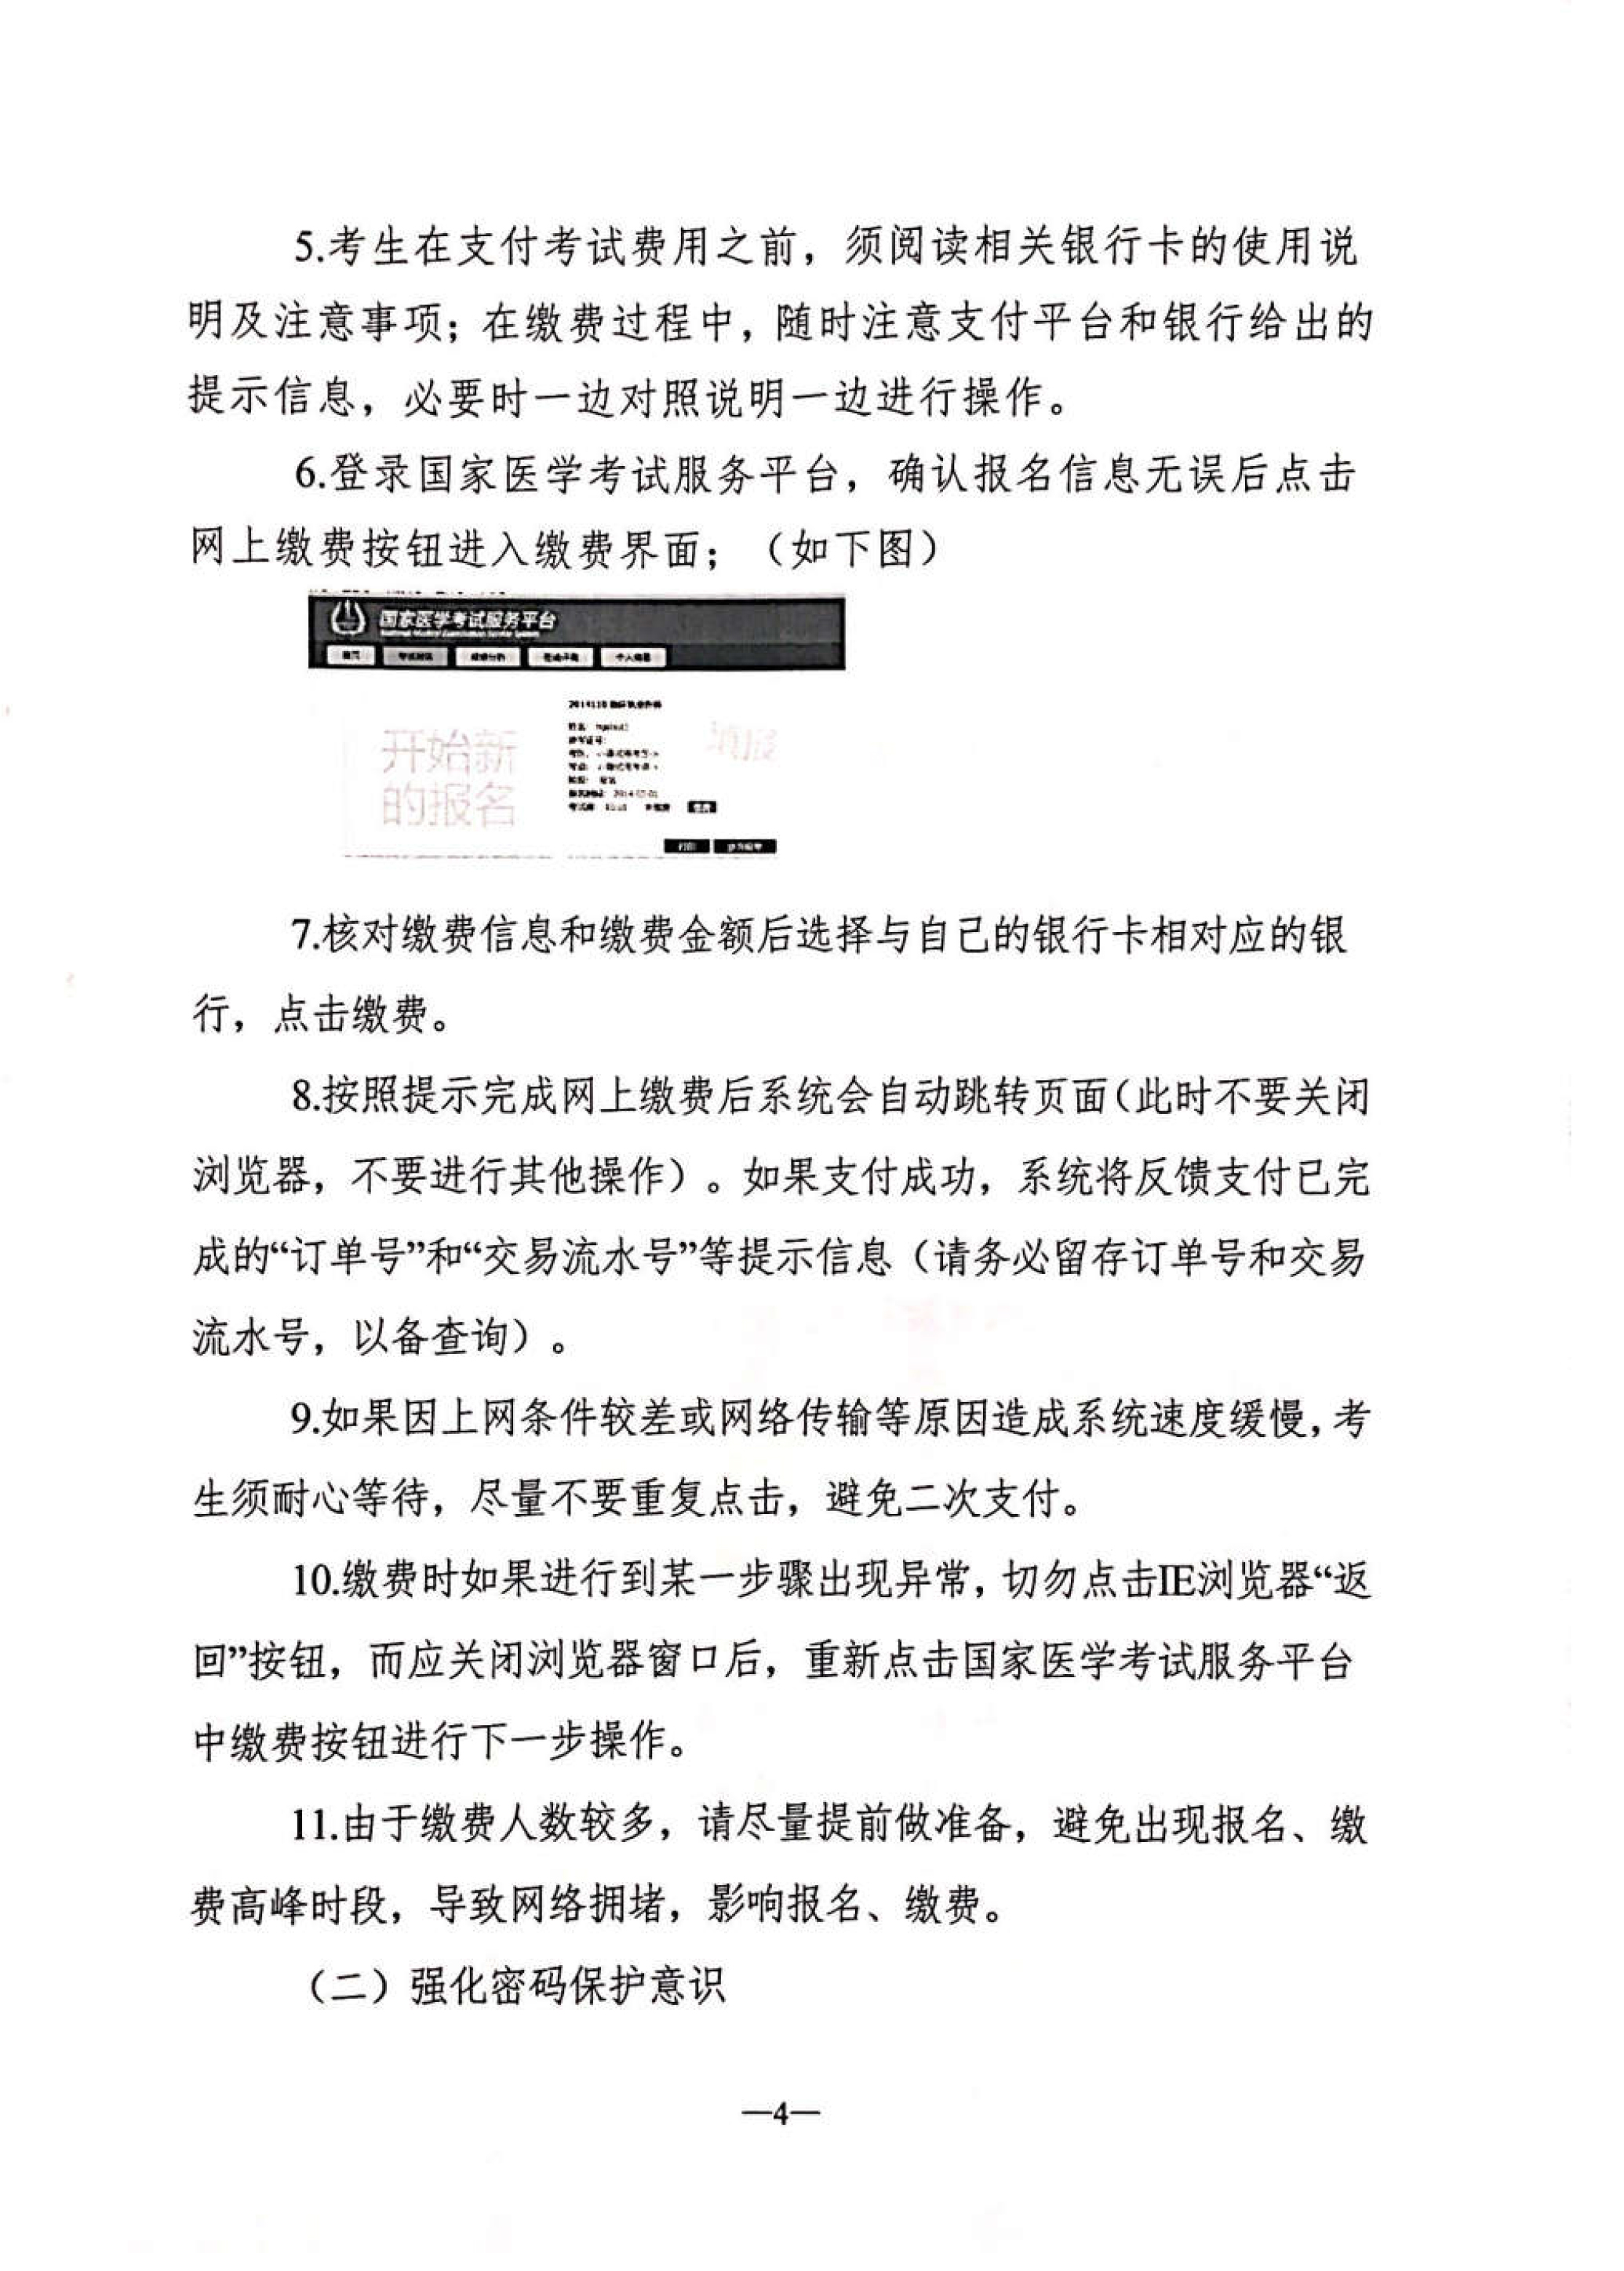 江苏省2019年执业医师考试收费标准已公布